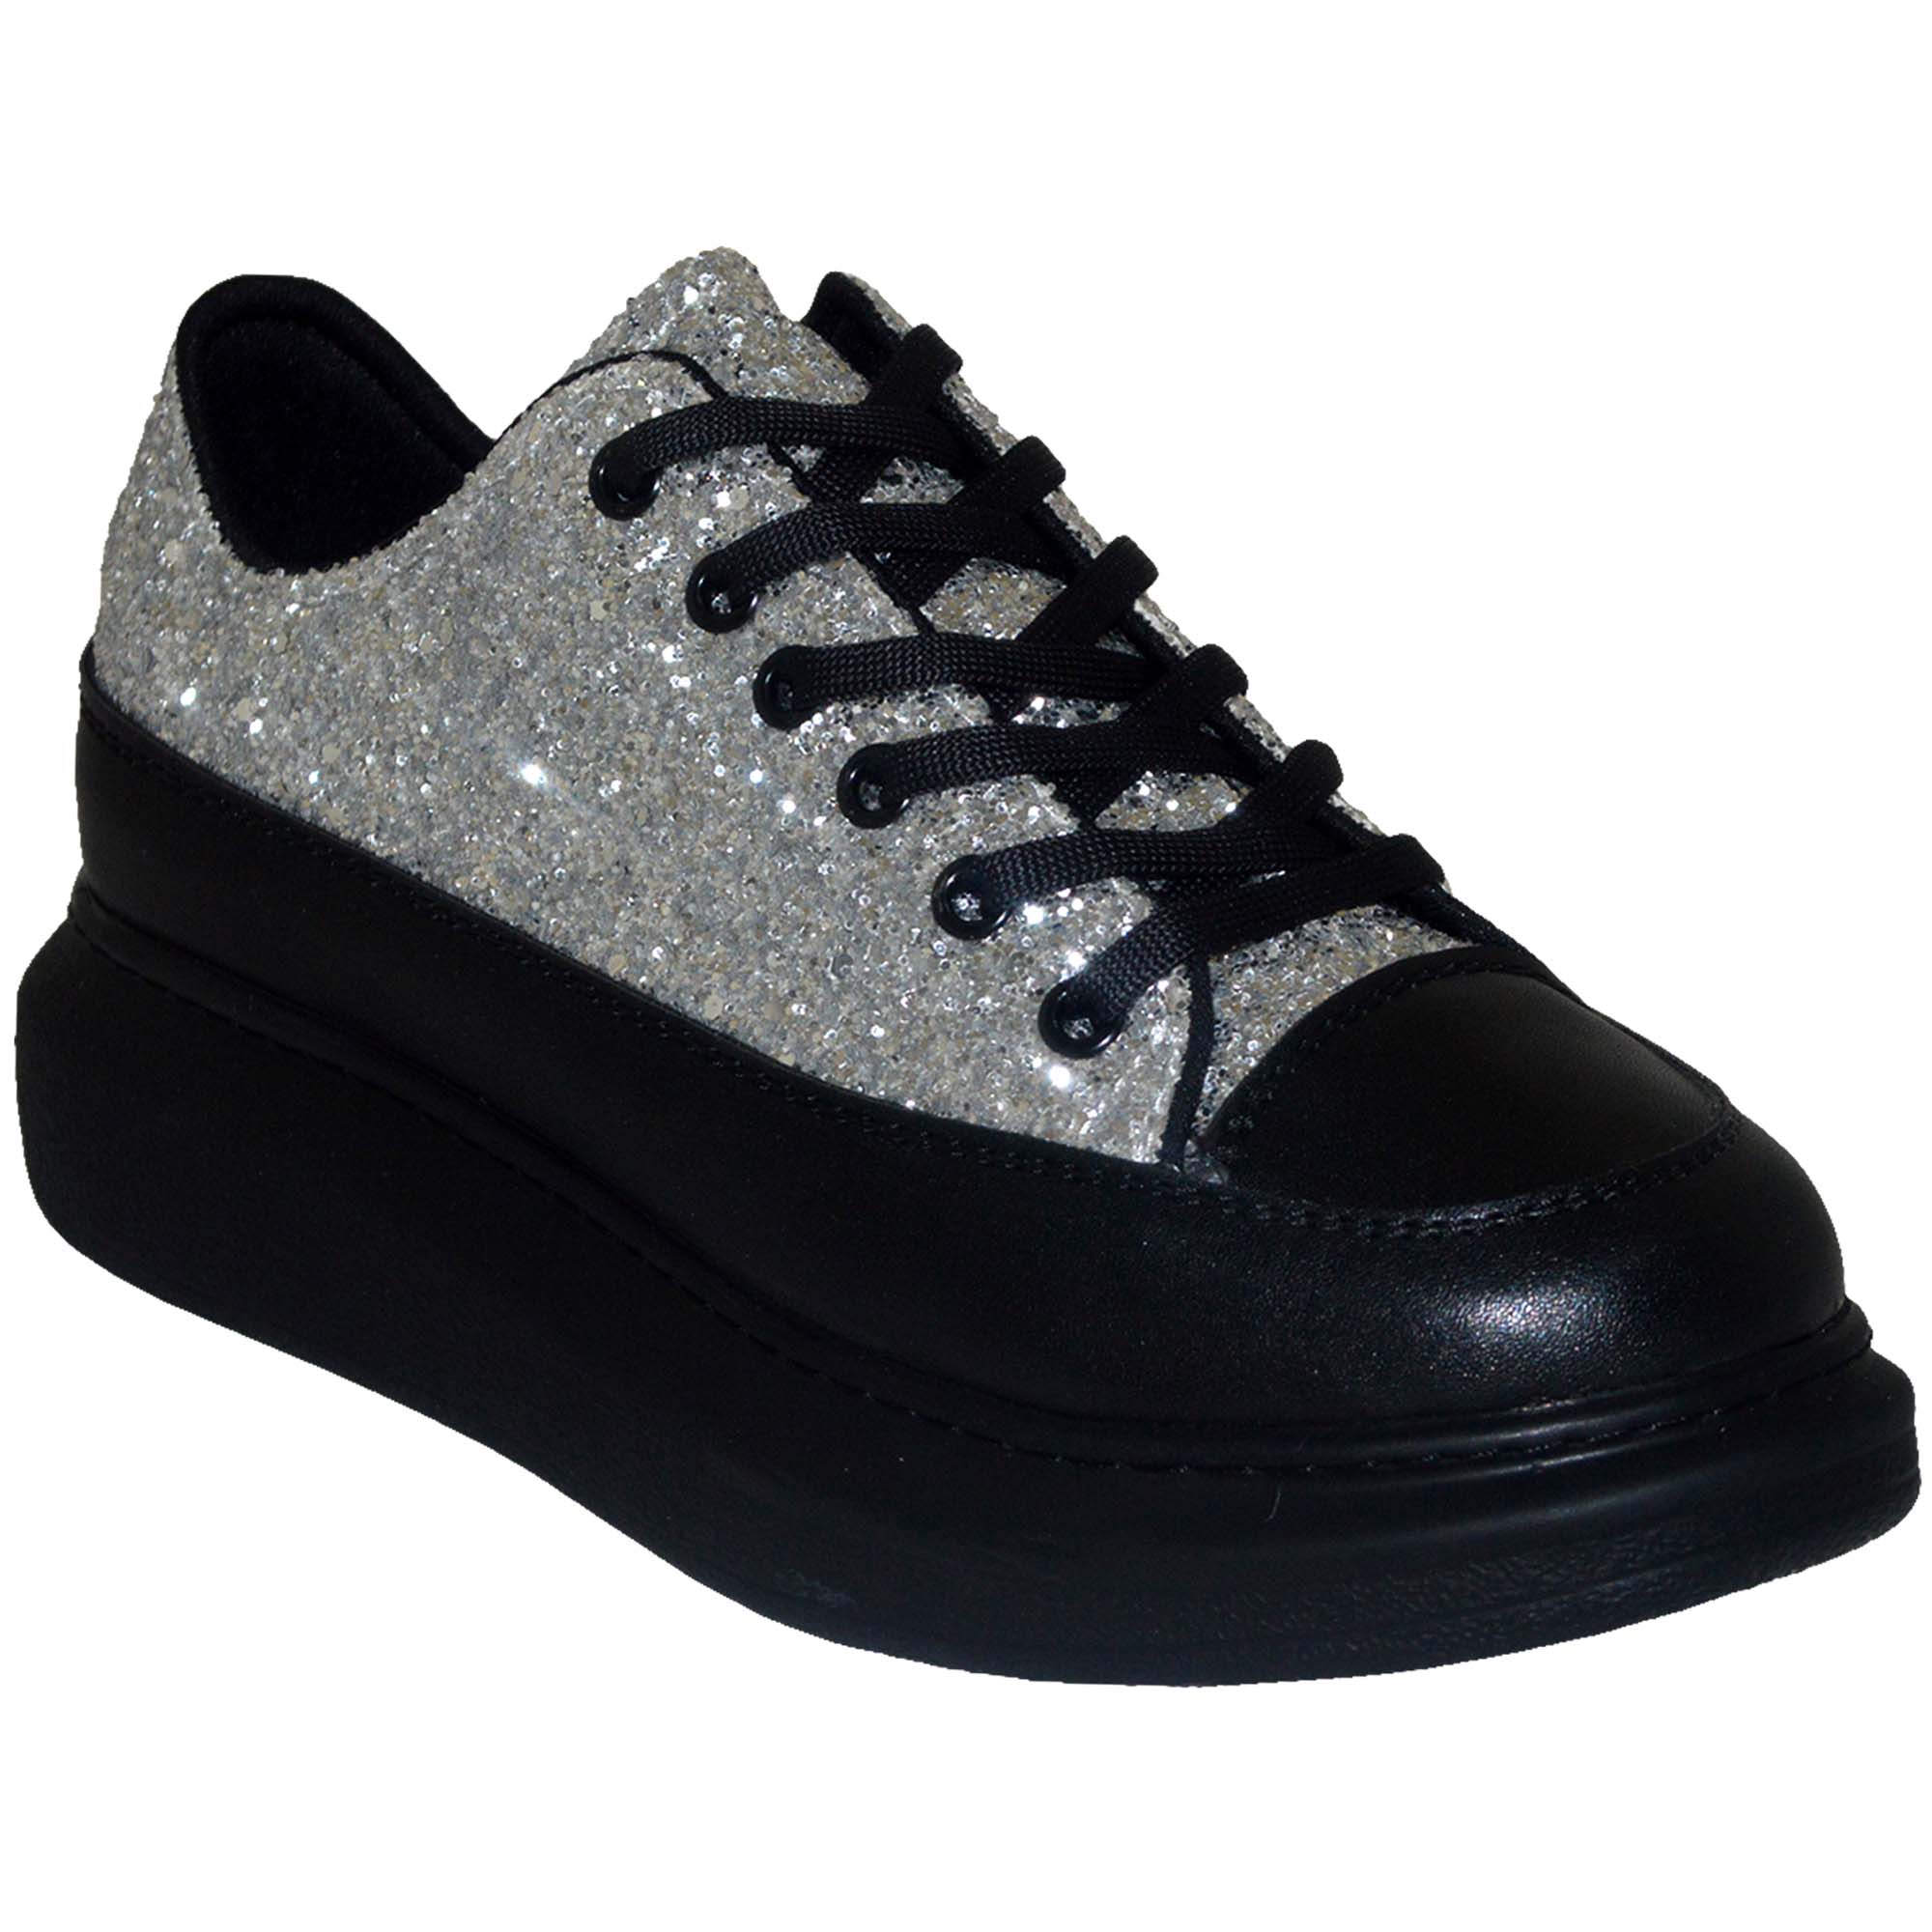 Spor Model Kadın Ayakkabı - Siyah/Gümüş Taşlı